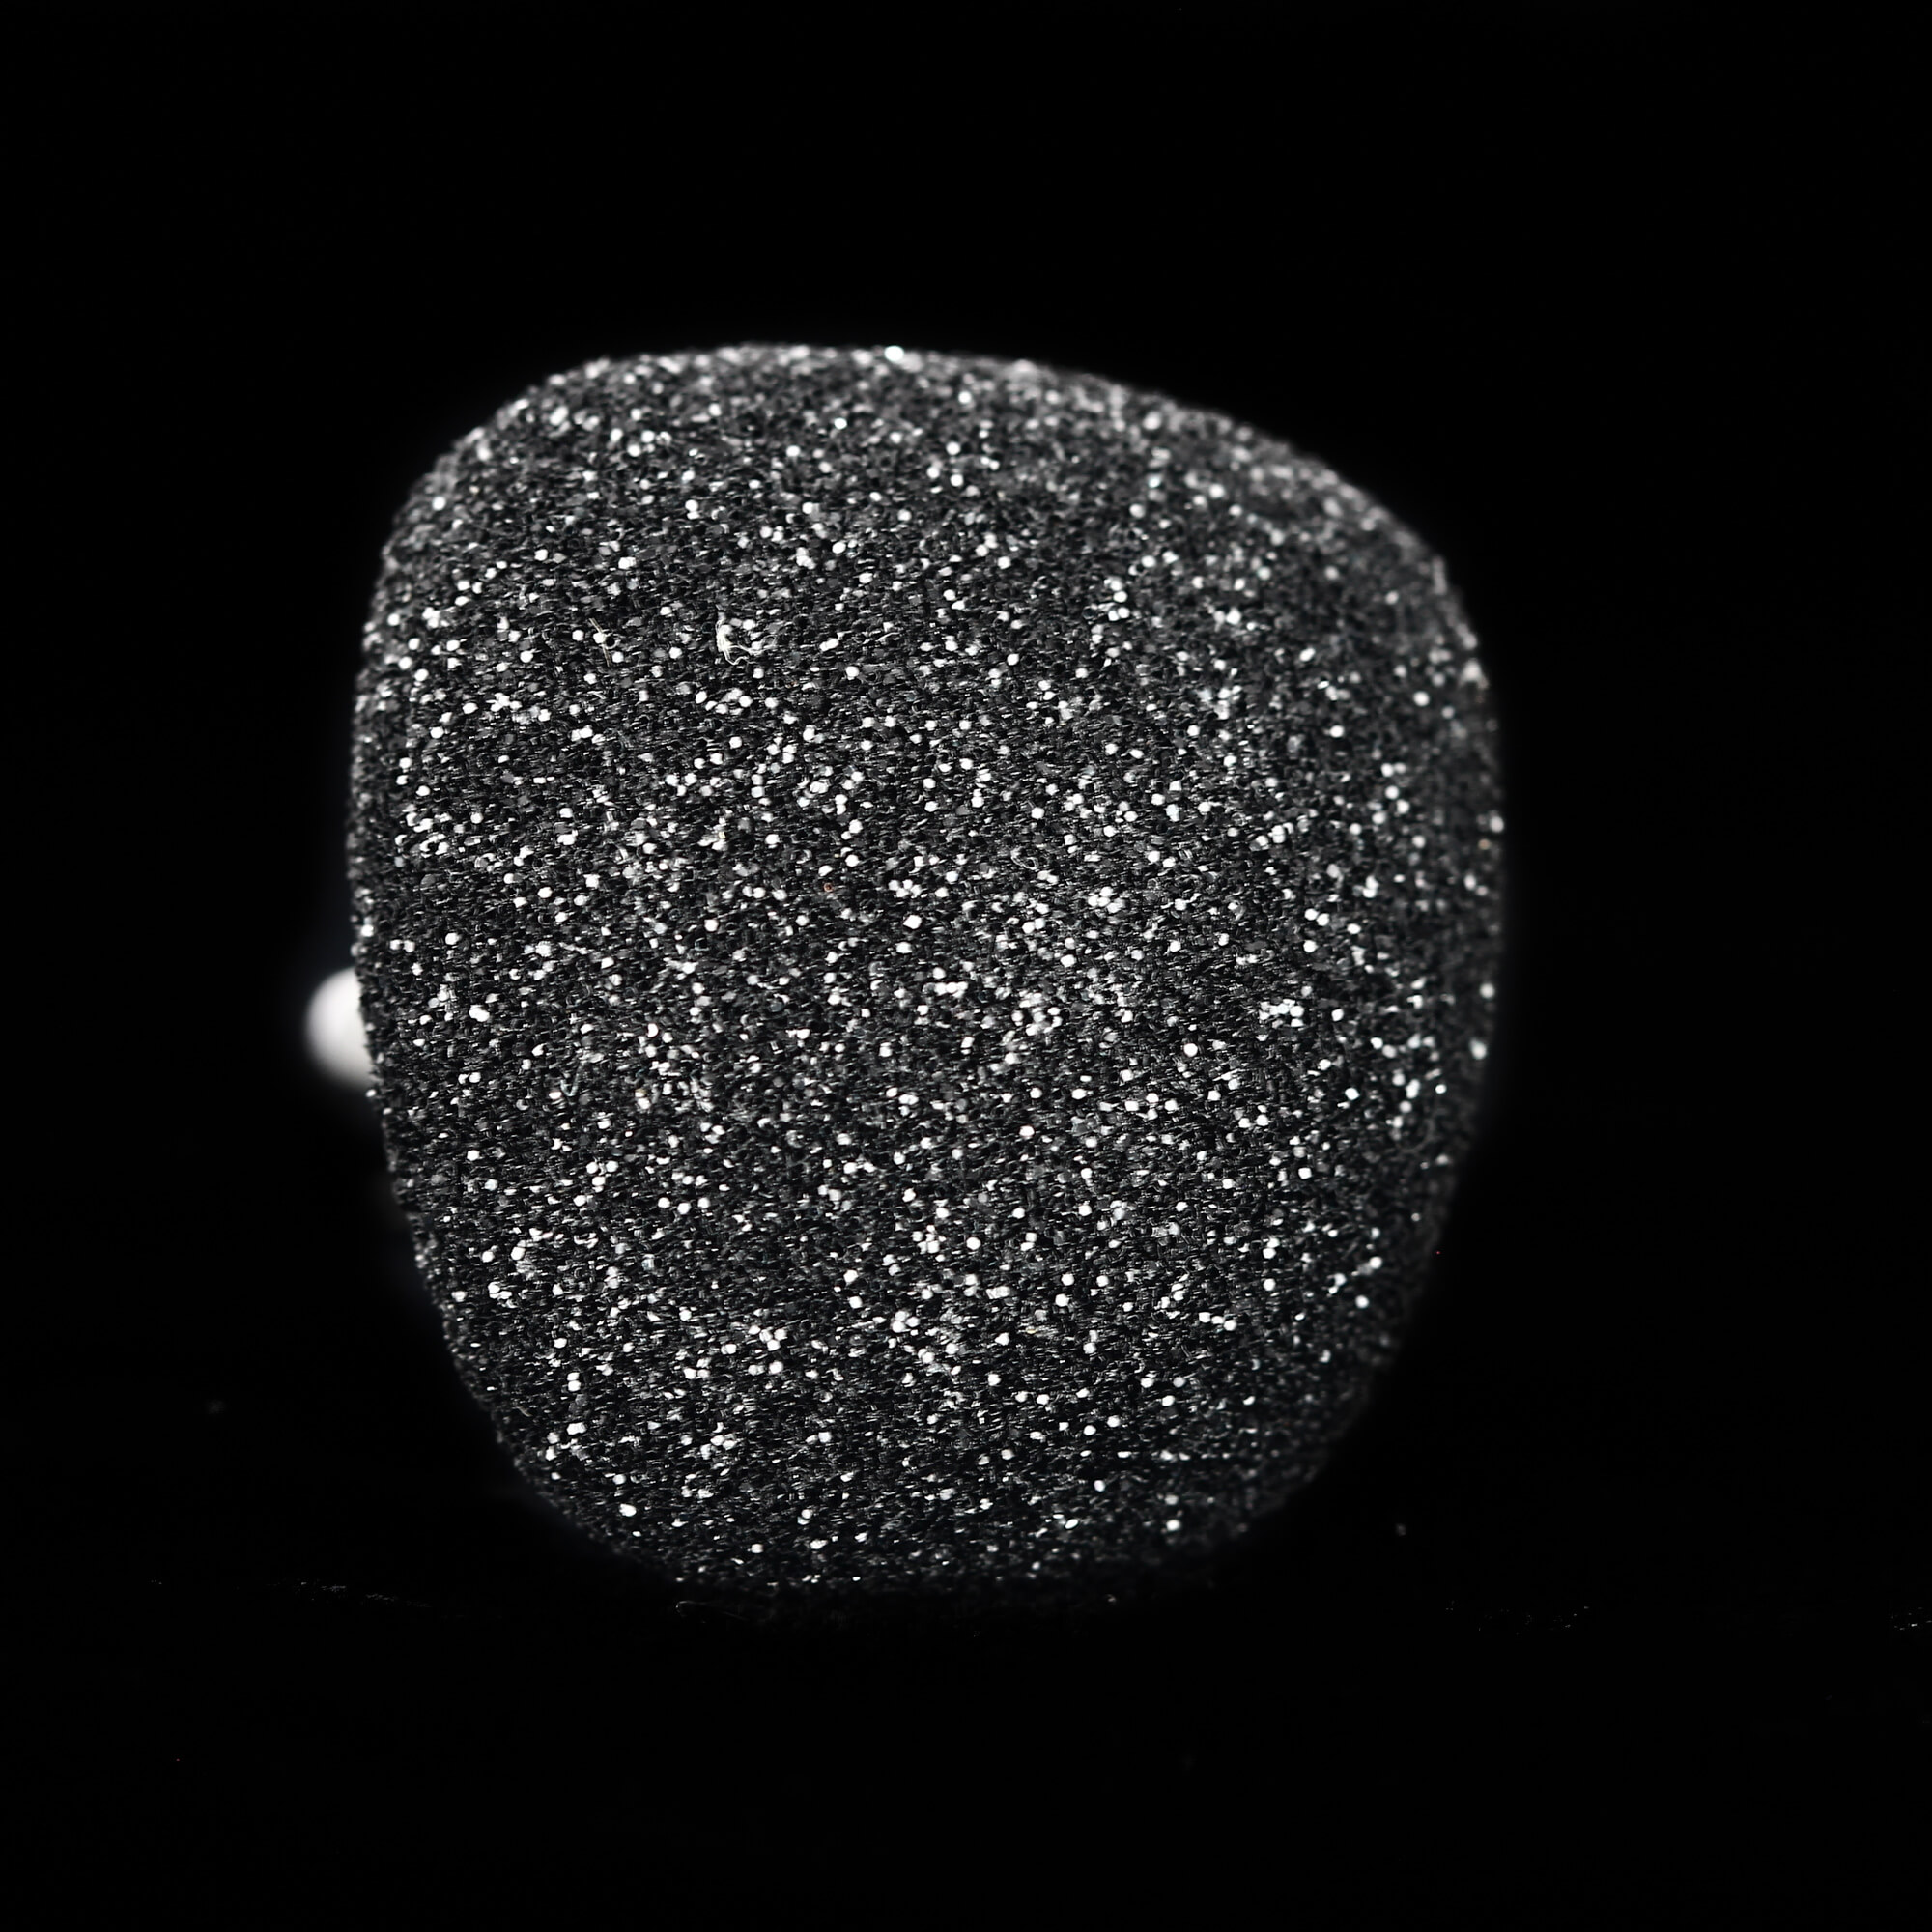 Schitterende zwarte ring van sterling zilver